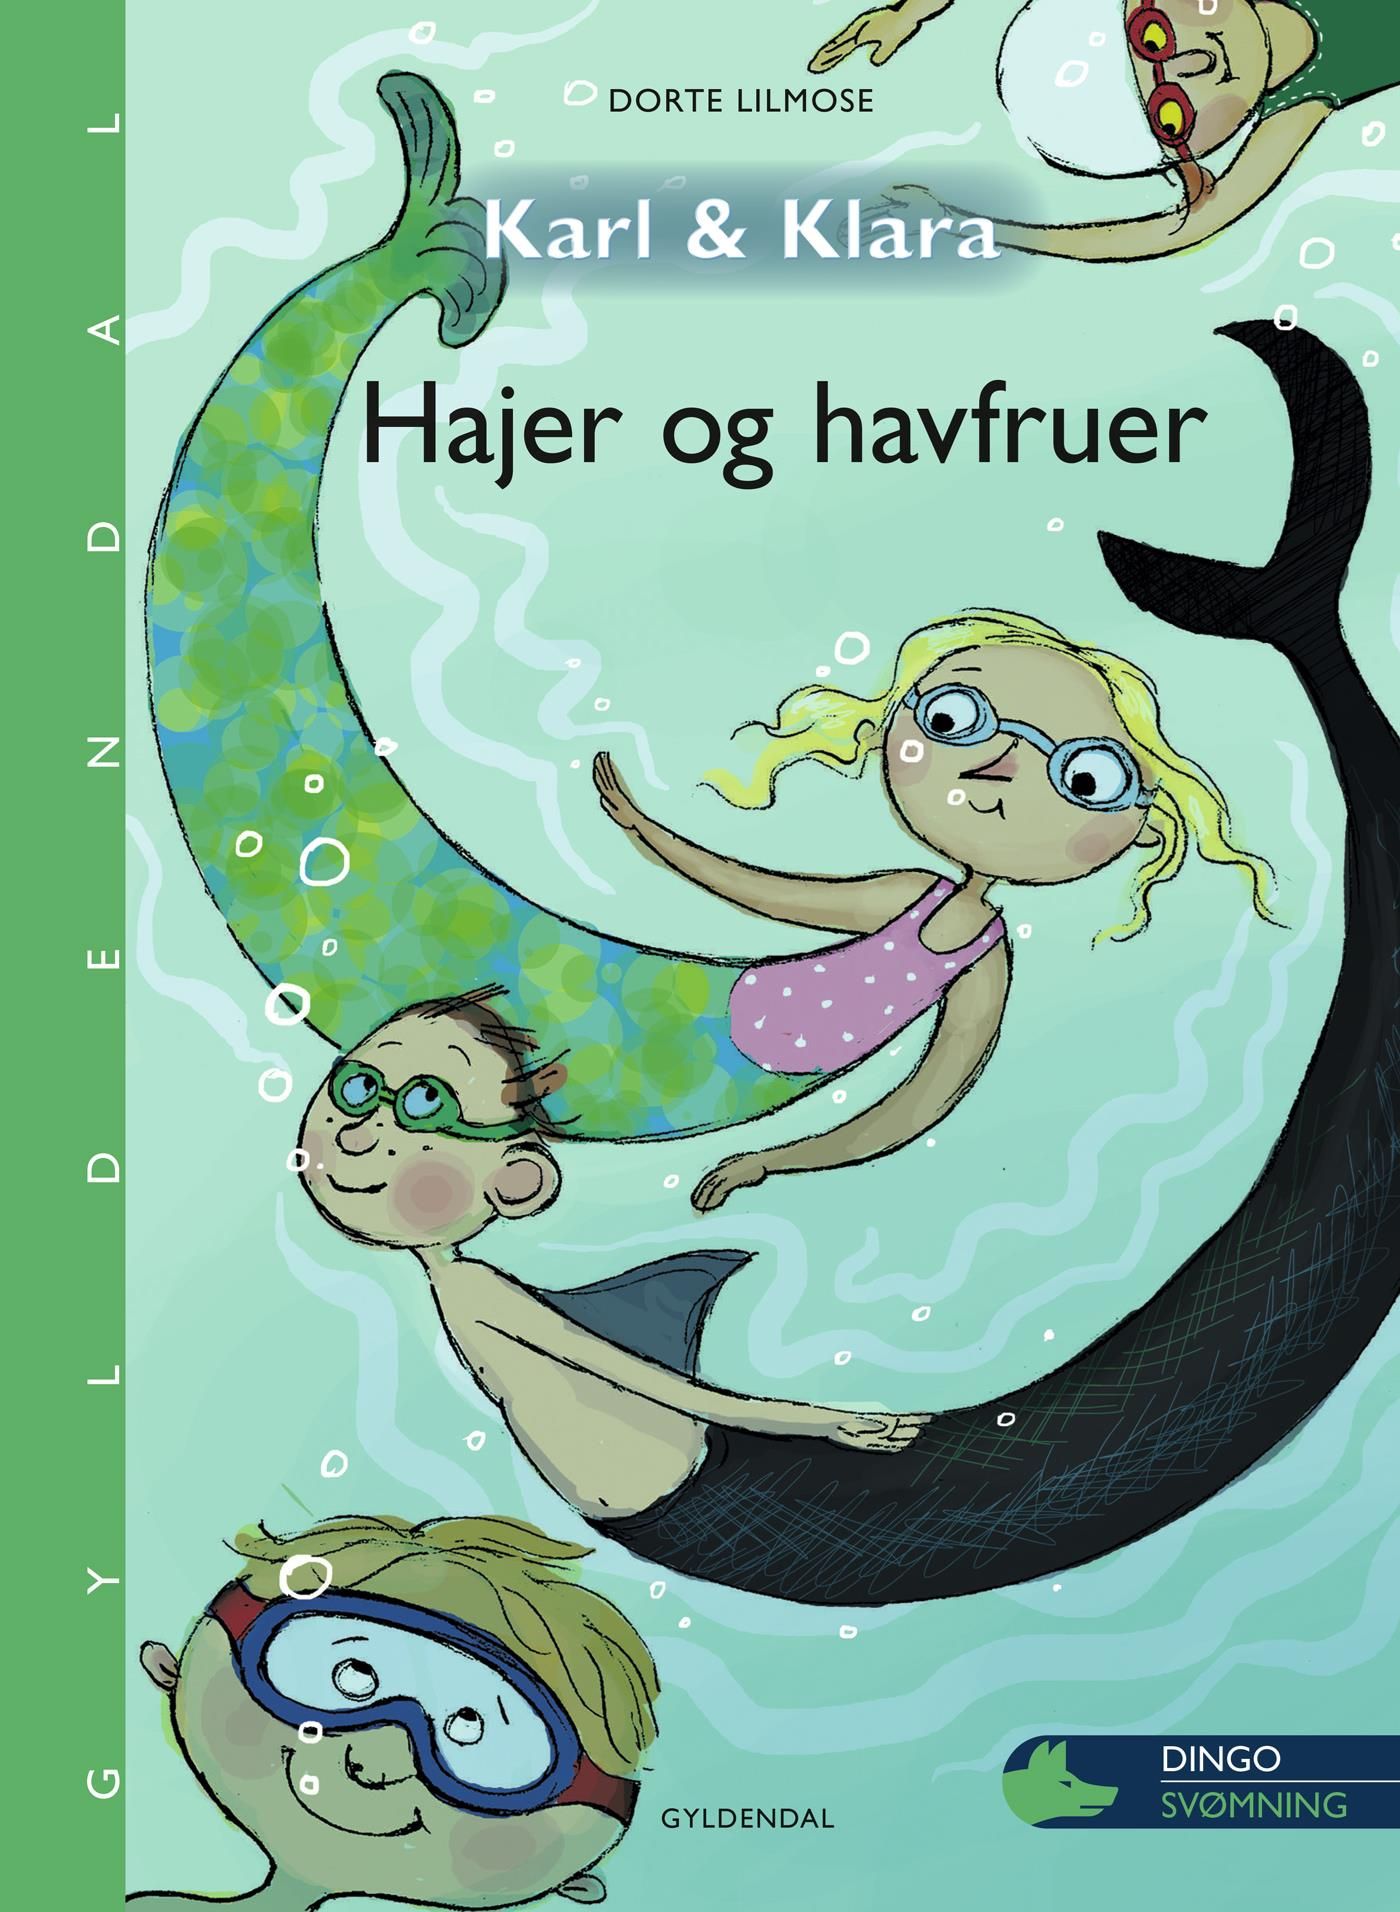 Karl og Klara - Hajer og havfruer, eBook by Dorte Lilmose